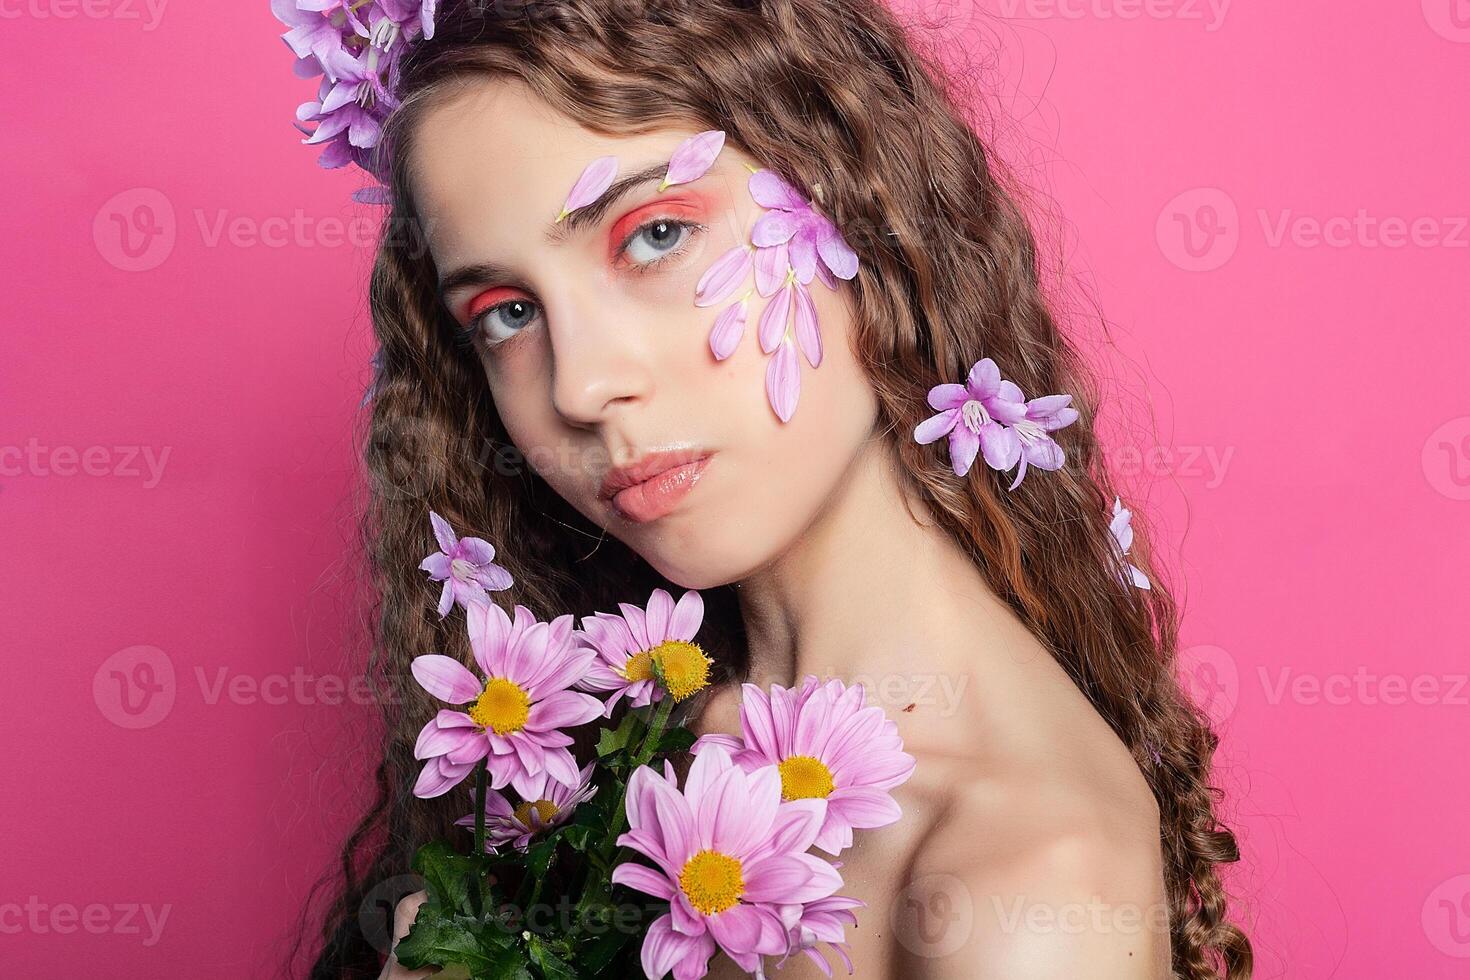 magnifique fille avec fleurs dans dans cheveux photo